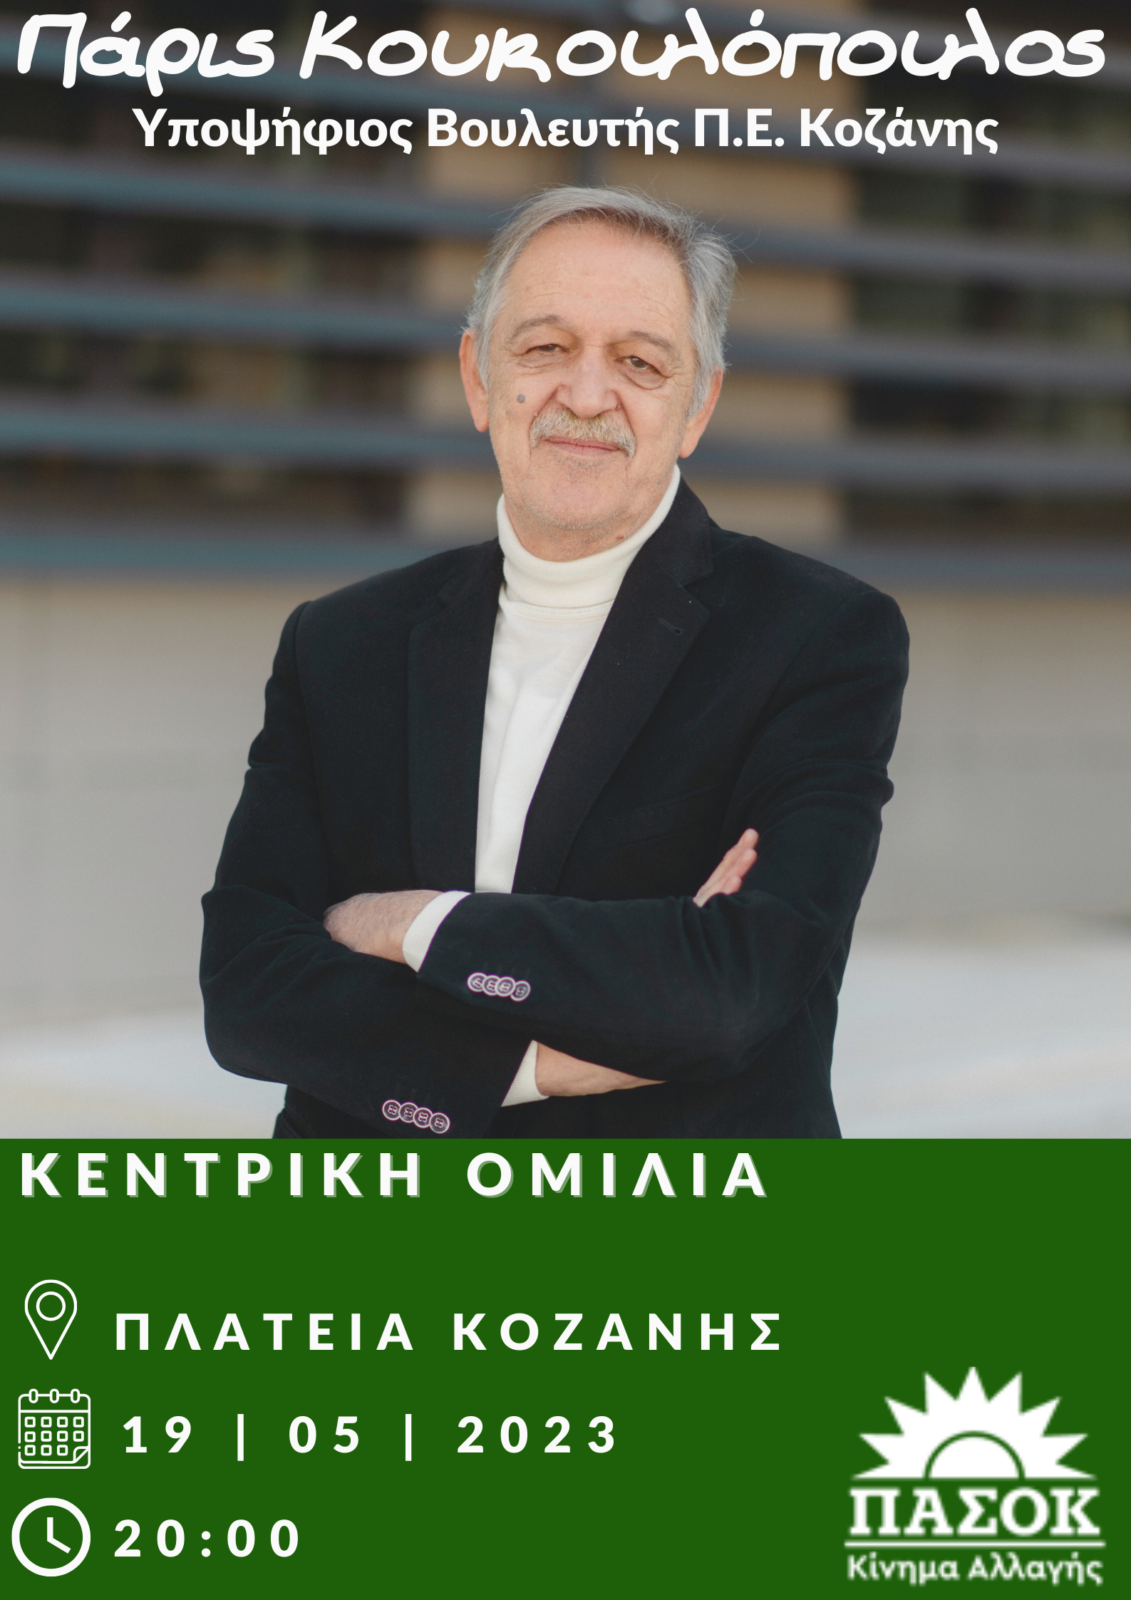 Πάρις Κουκουλόπουλος: Κεντρική Ομιλία απόψε στις 20:00 στην κεντρική πλατεία Κοζάνης